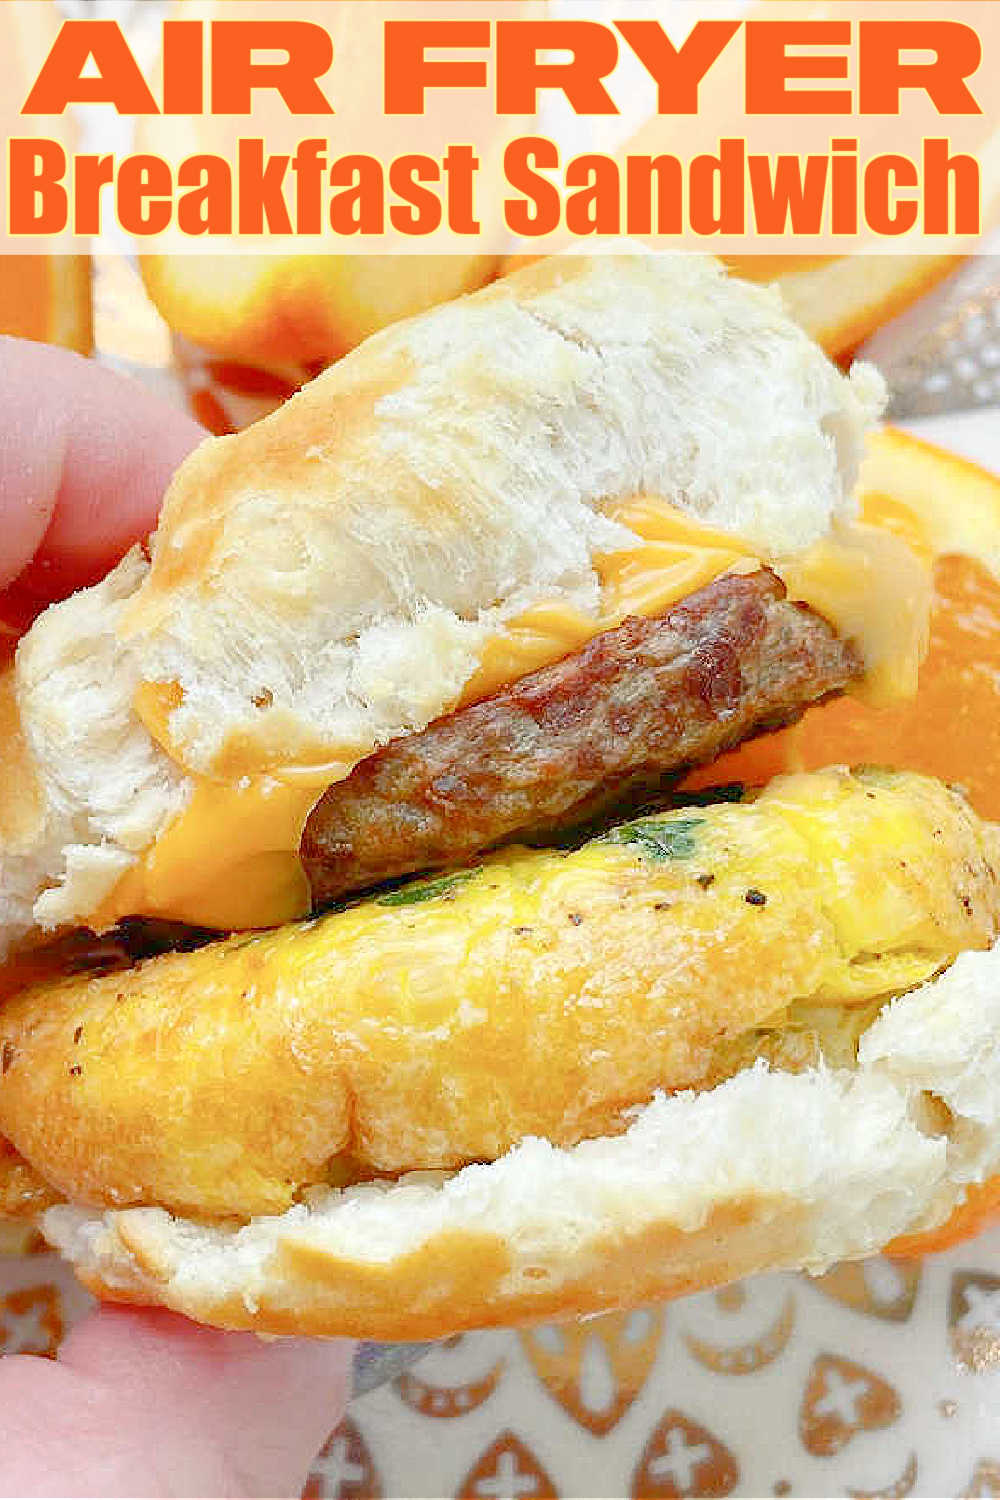 Air Fryer Breakfast Sandwich | Foodtastic Mom #airfryerrecipes #airfryerbreakfastsandwich #breakfastsandwich via @foodtasticmom